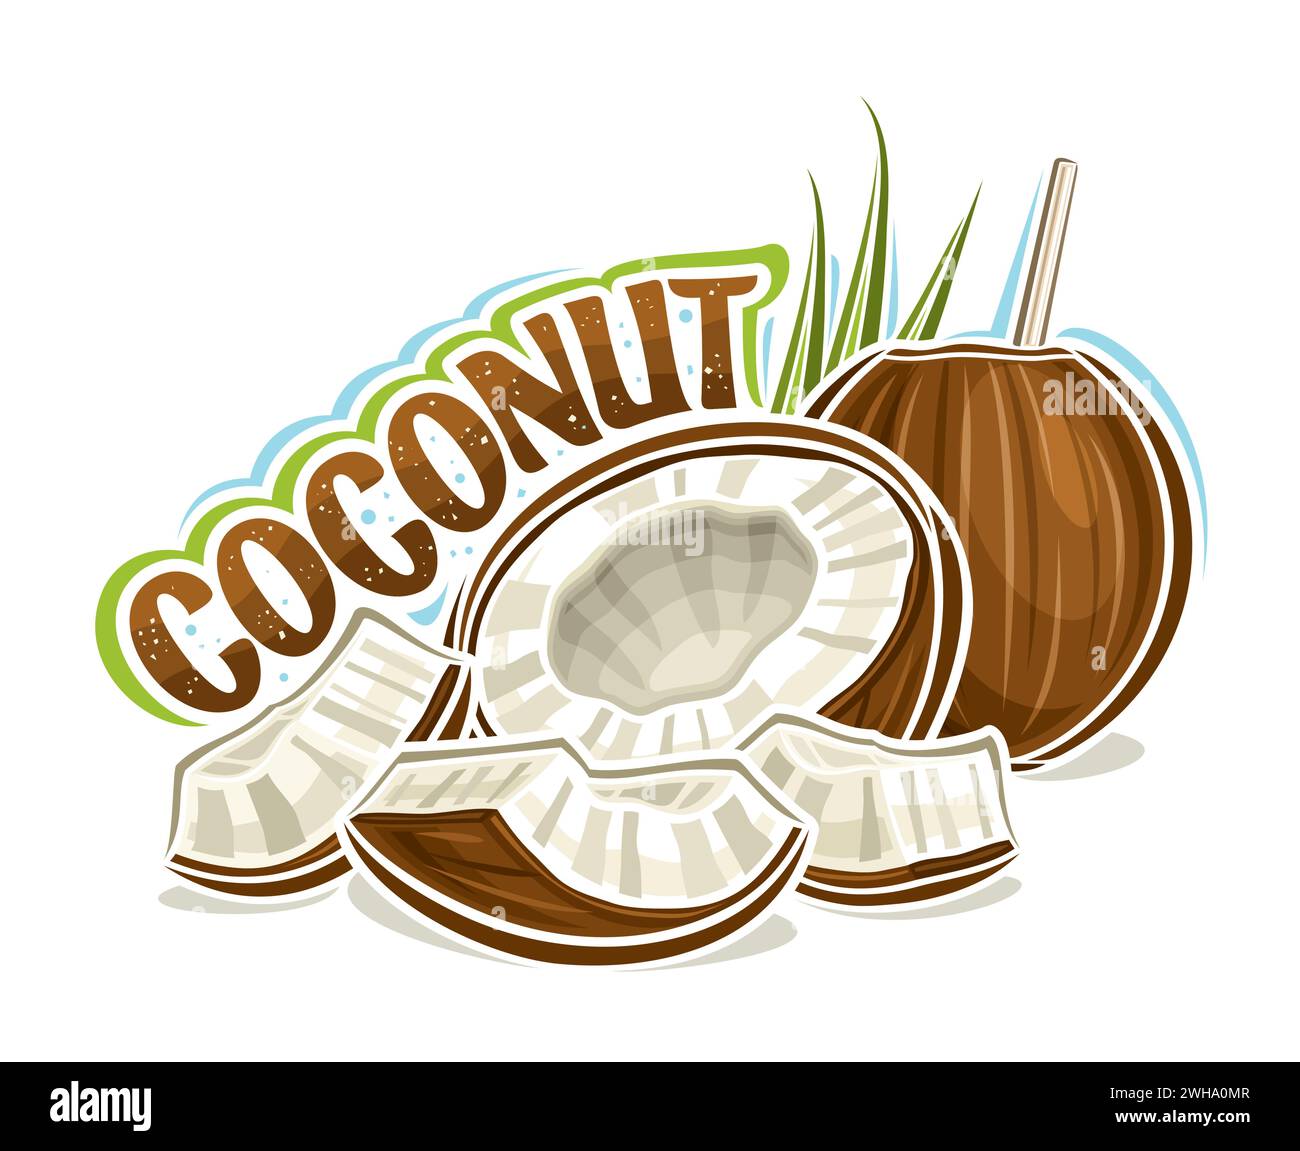 Vektor-Logo für Kokosnüsse, horizontales Poster mit Umrissillustration der Reifen saftigen Kokosnusskomposition mit grünem Palmzweig, Cartoon-Design fruchtig p Stock Vektor